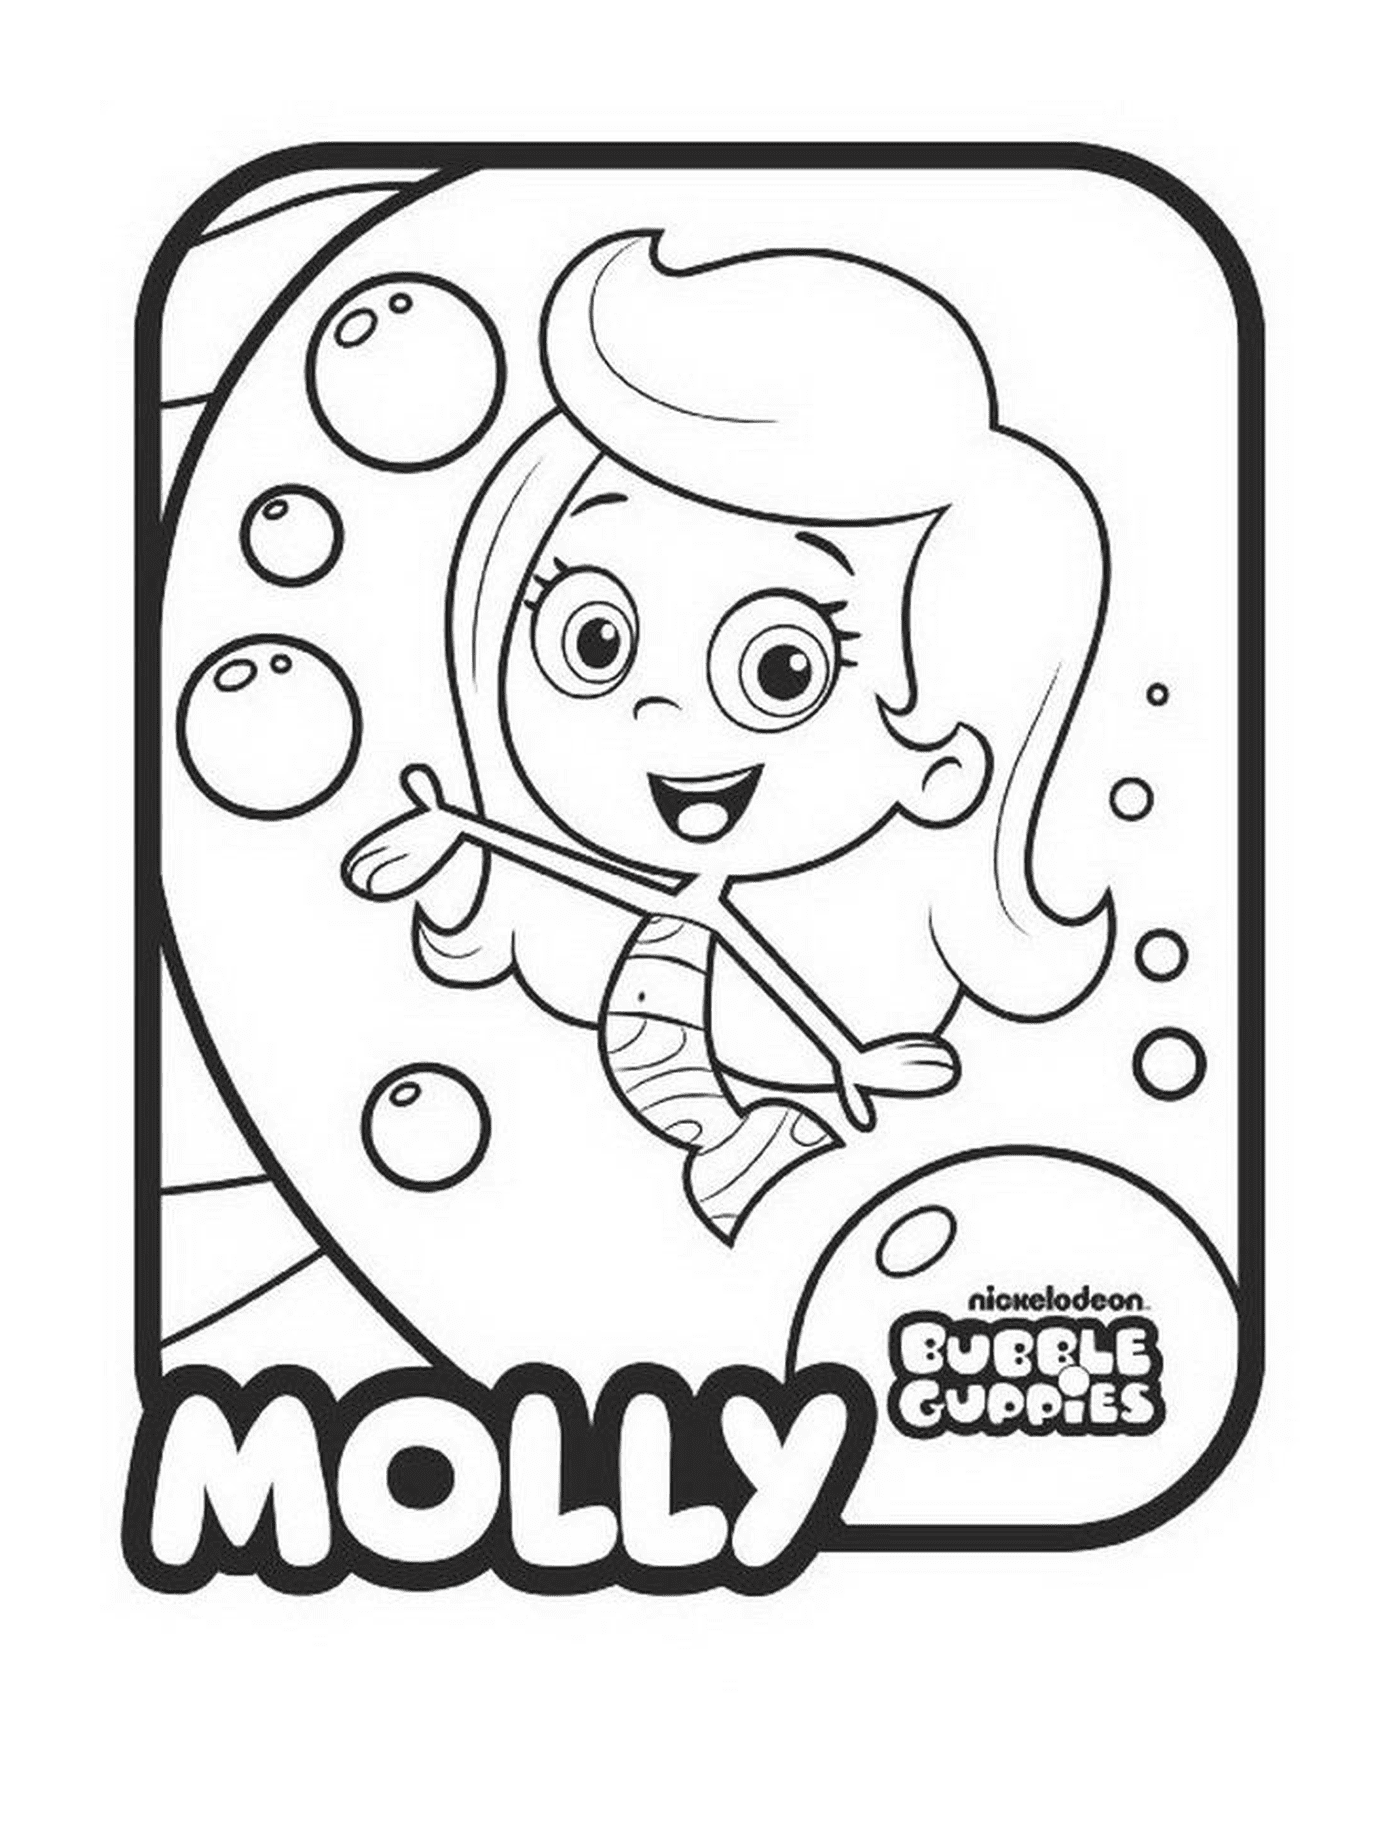   Molly des Bubble Guppies 